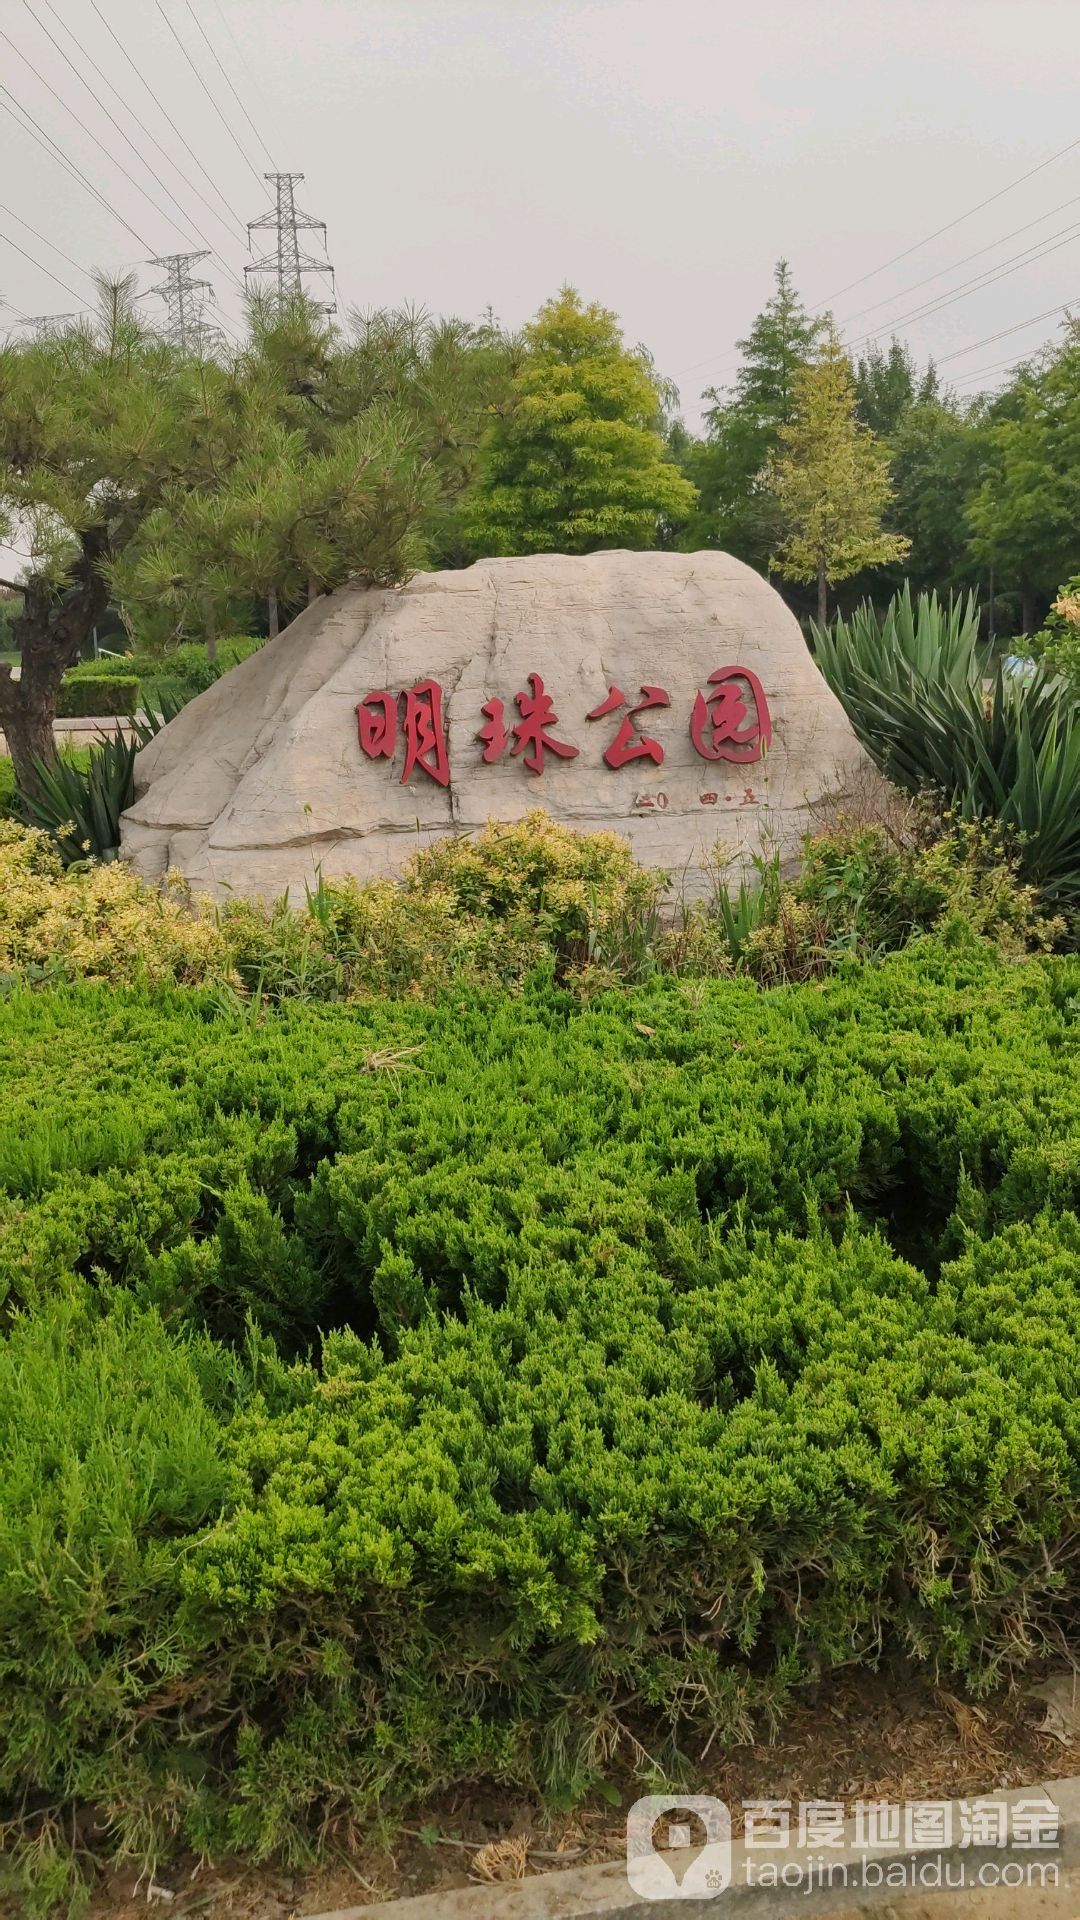 明珠公园                     地址:山东省潍坊市寿光市正阳路与公园